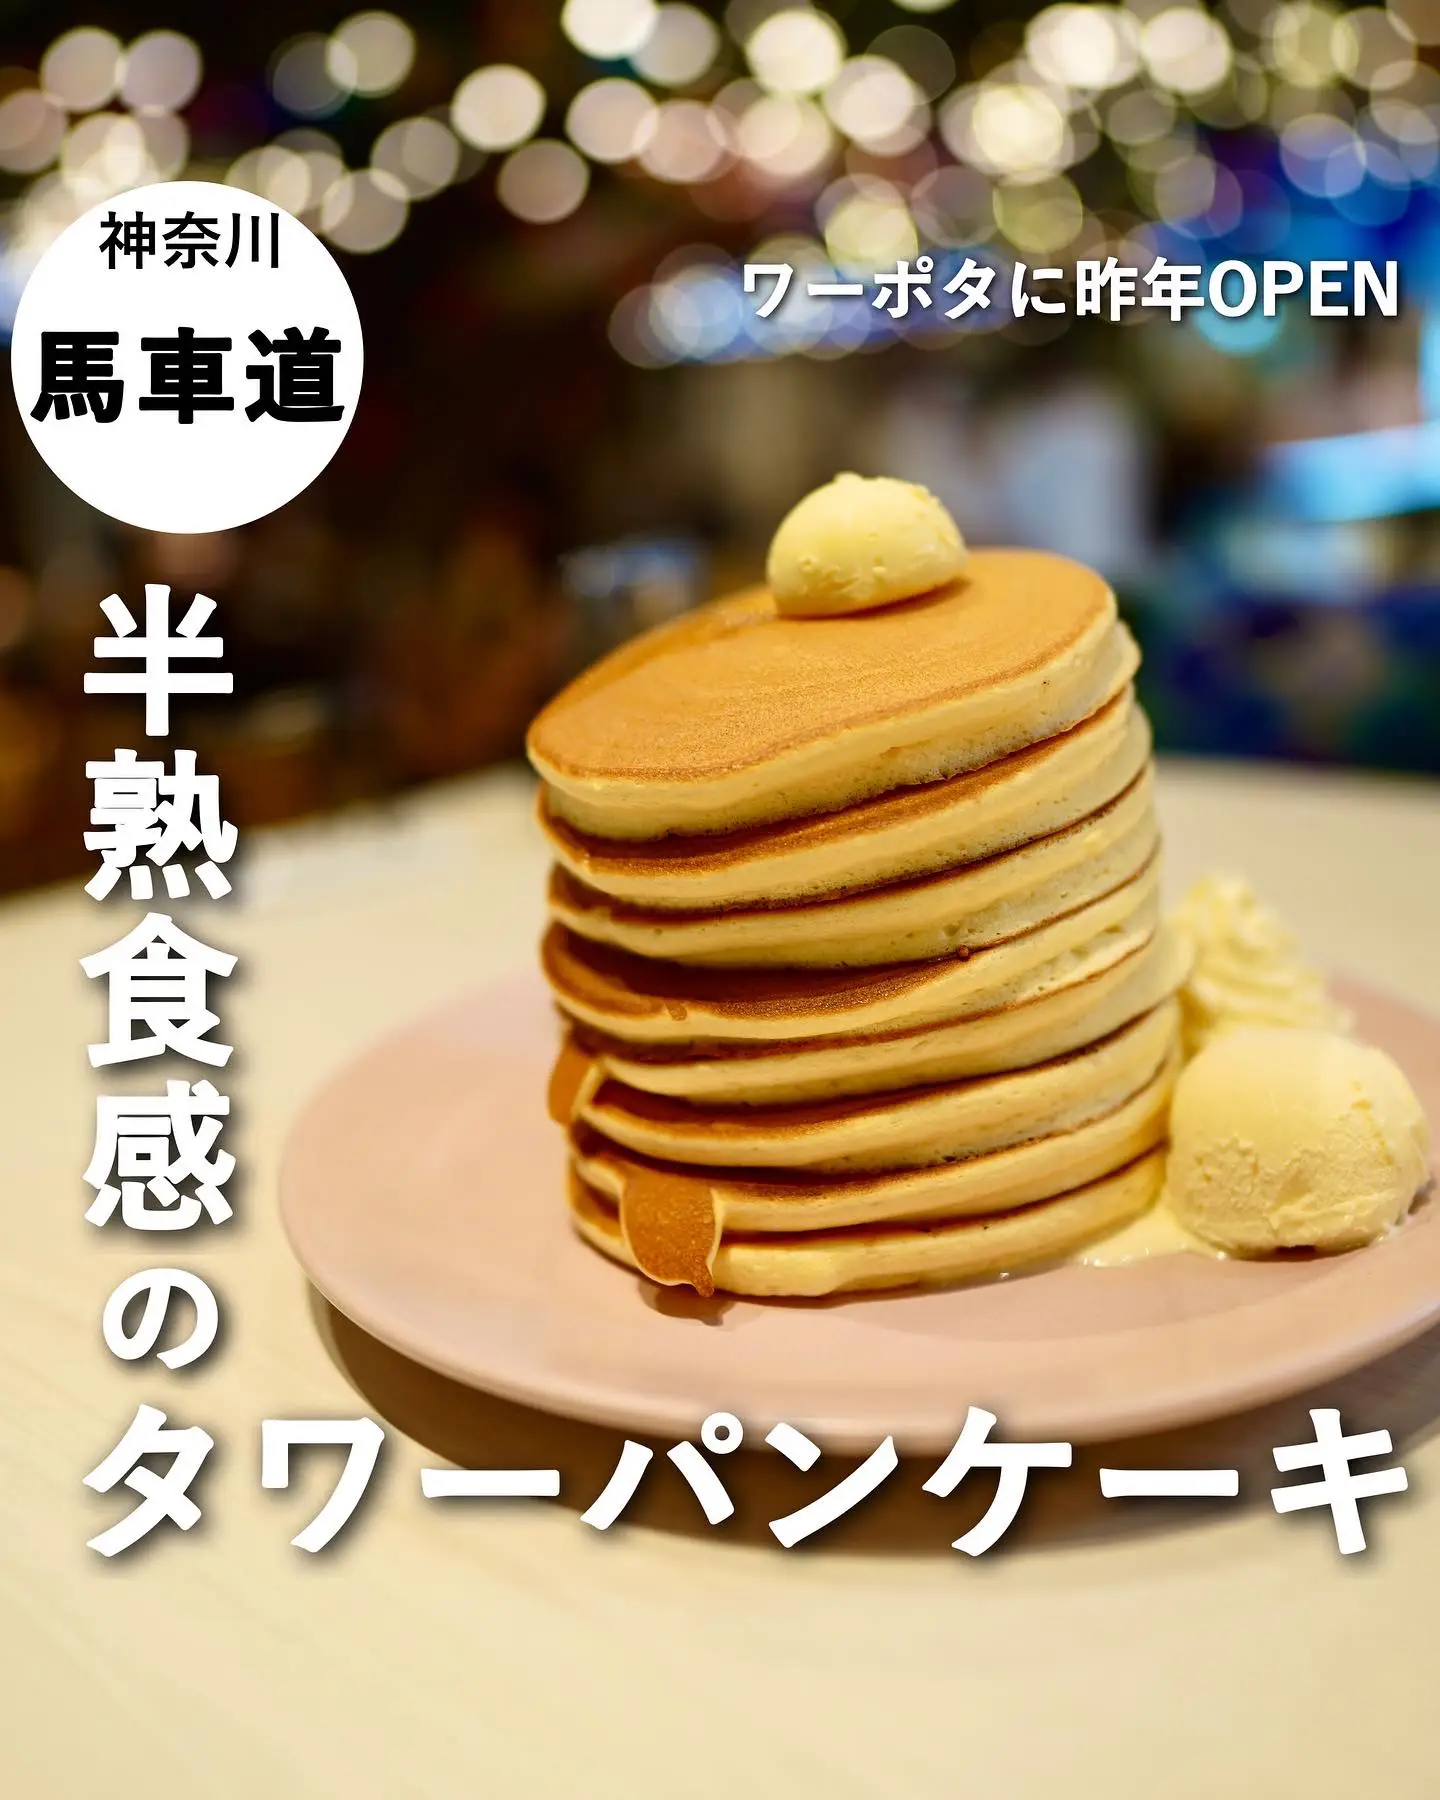 【神奈川/馬車道】ワールドポーターズにある半熟食感のタワーパンケーキが最高です🥞の画像 (1枚目)